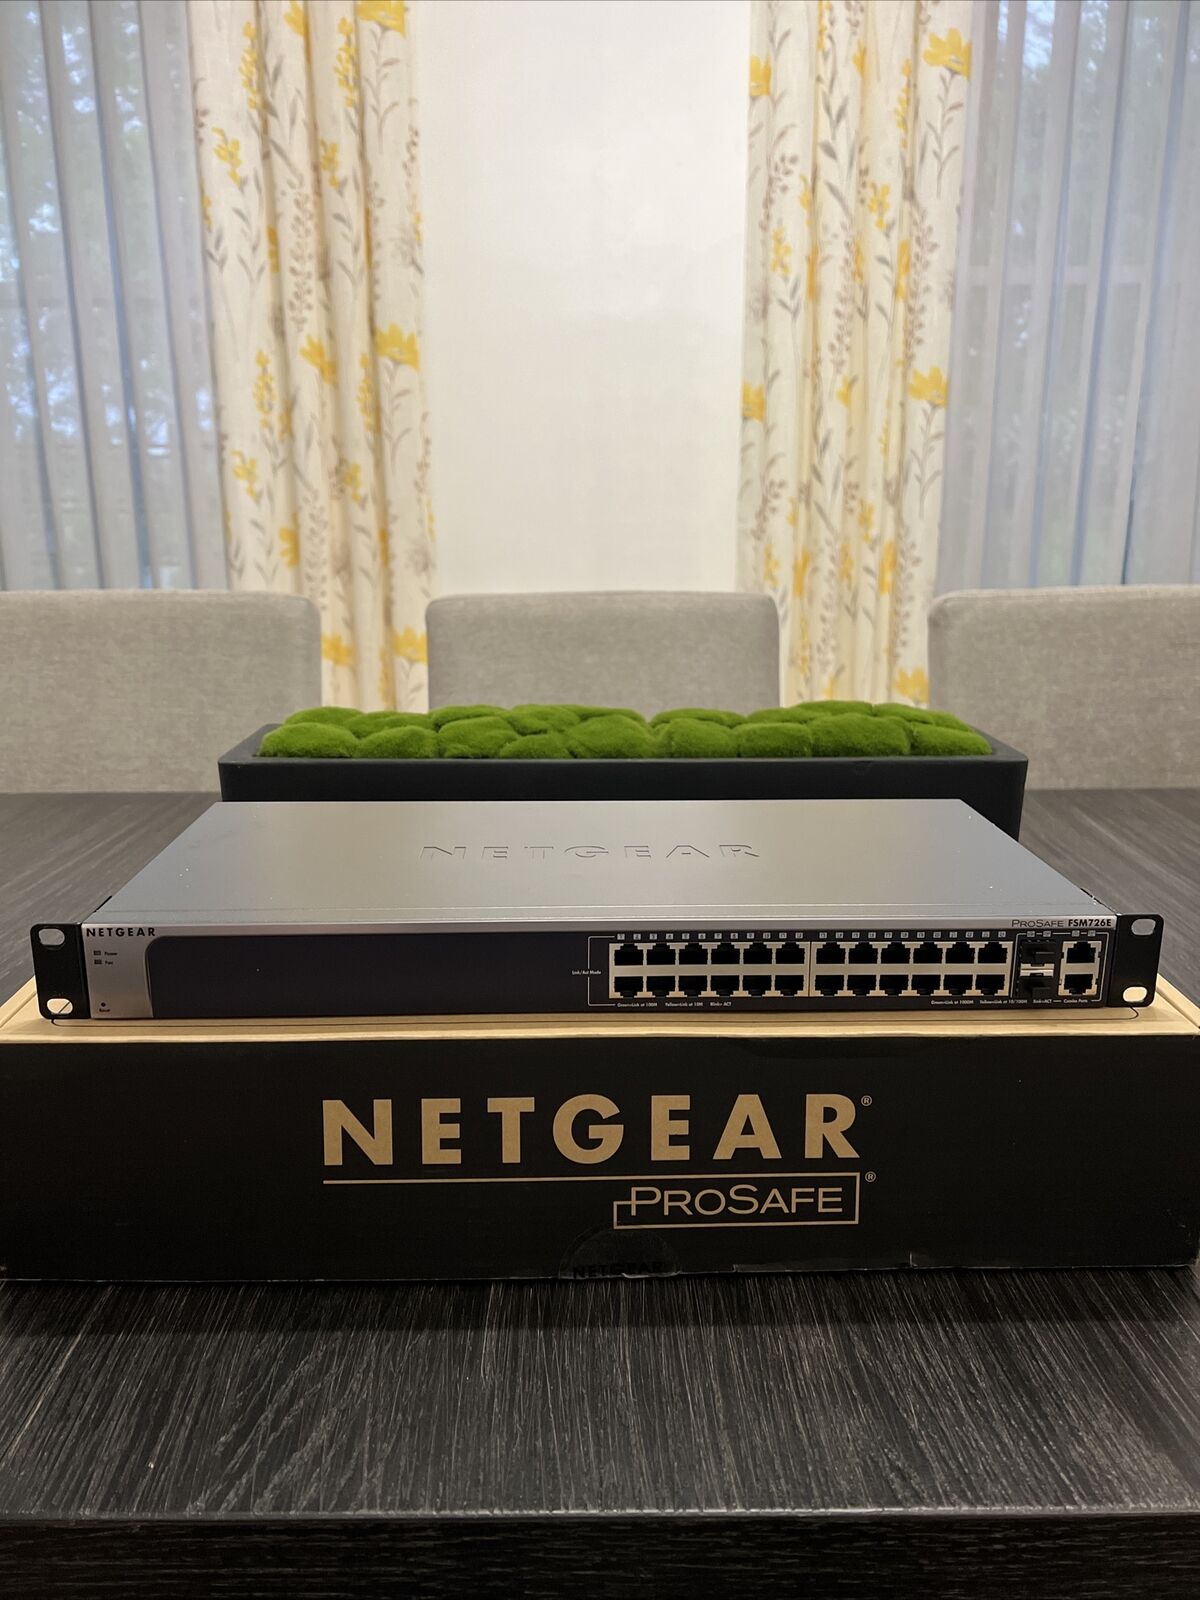 FSM726E NetGear ProSafe 24 Port 10/100Mbps Layer 2 Managed Switch Gigabyte ports